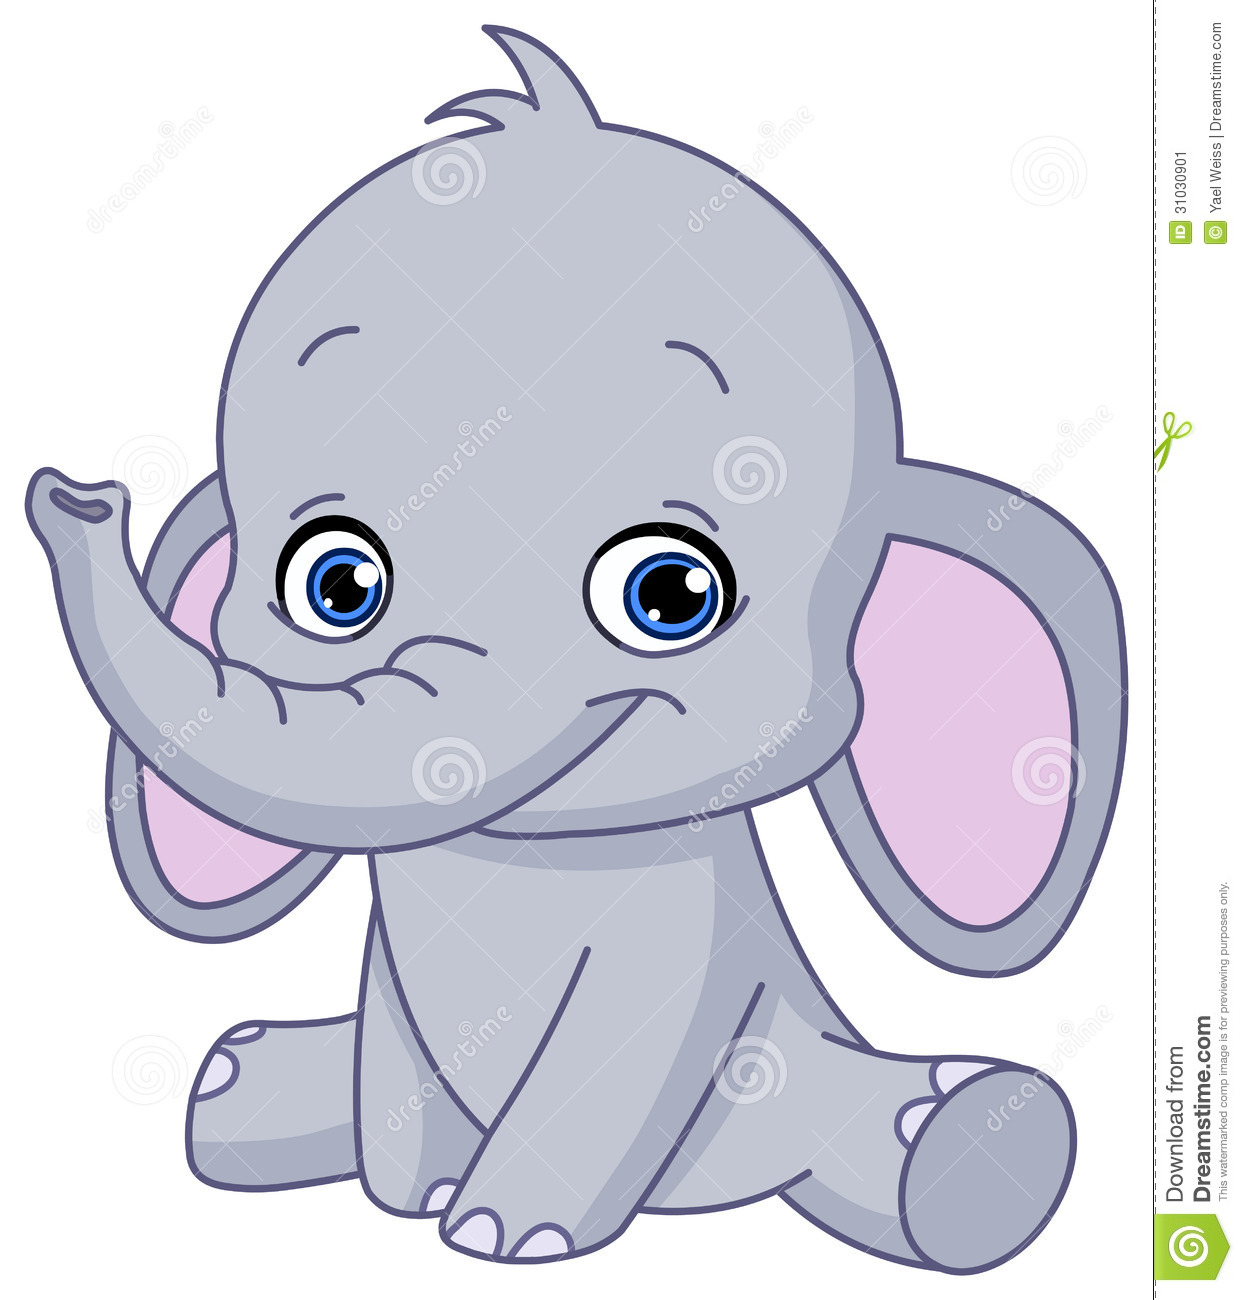 Baby Elephant Stock Image   Image  31030901